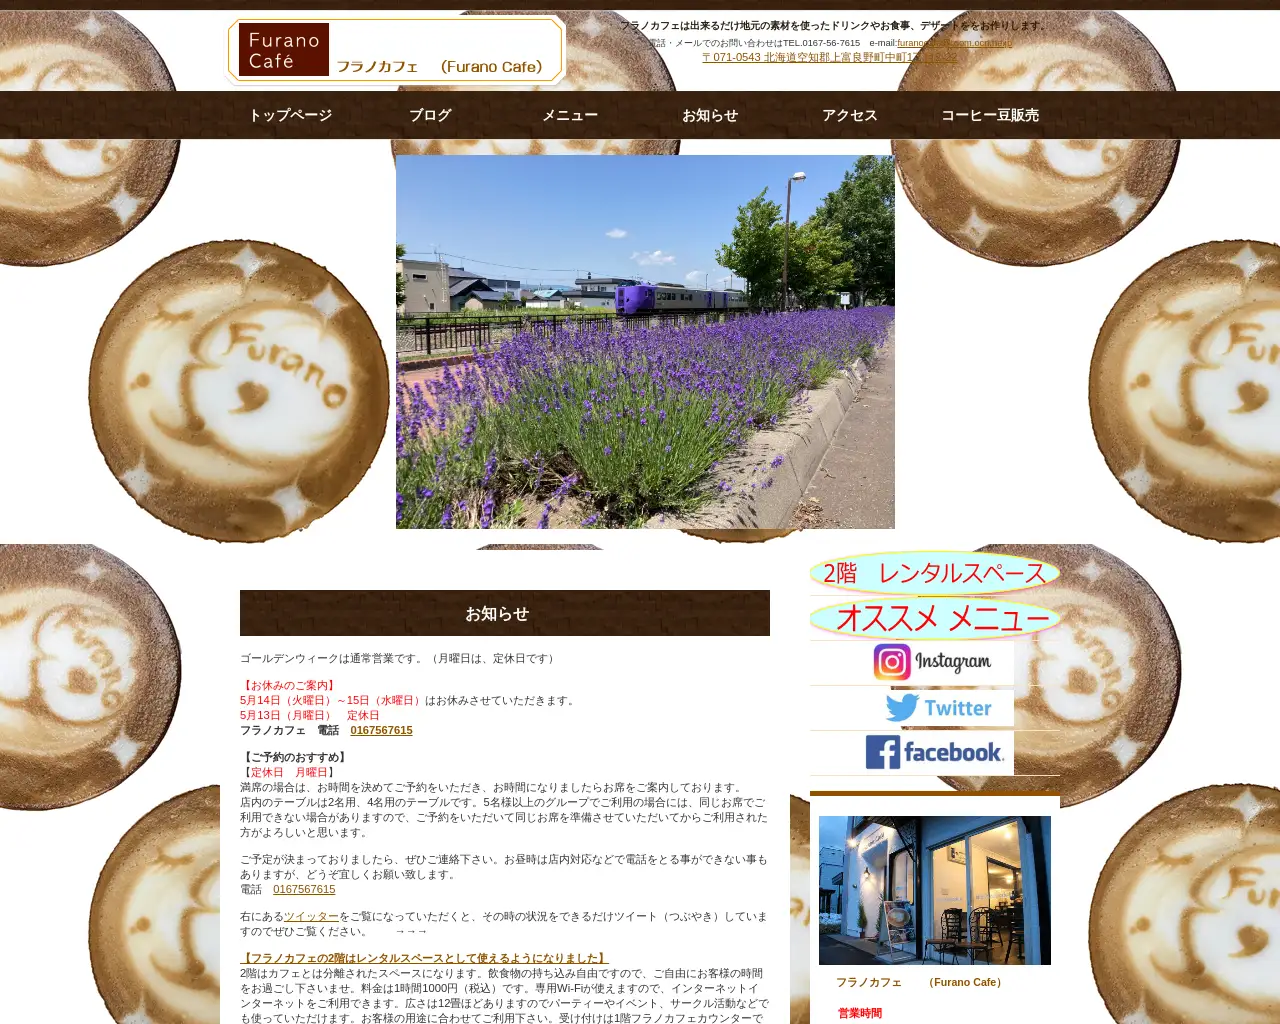 フラノカフェ (Furano Cafe) site